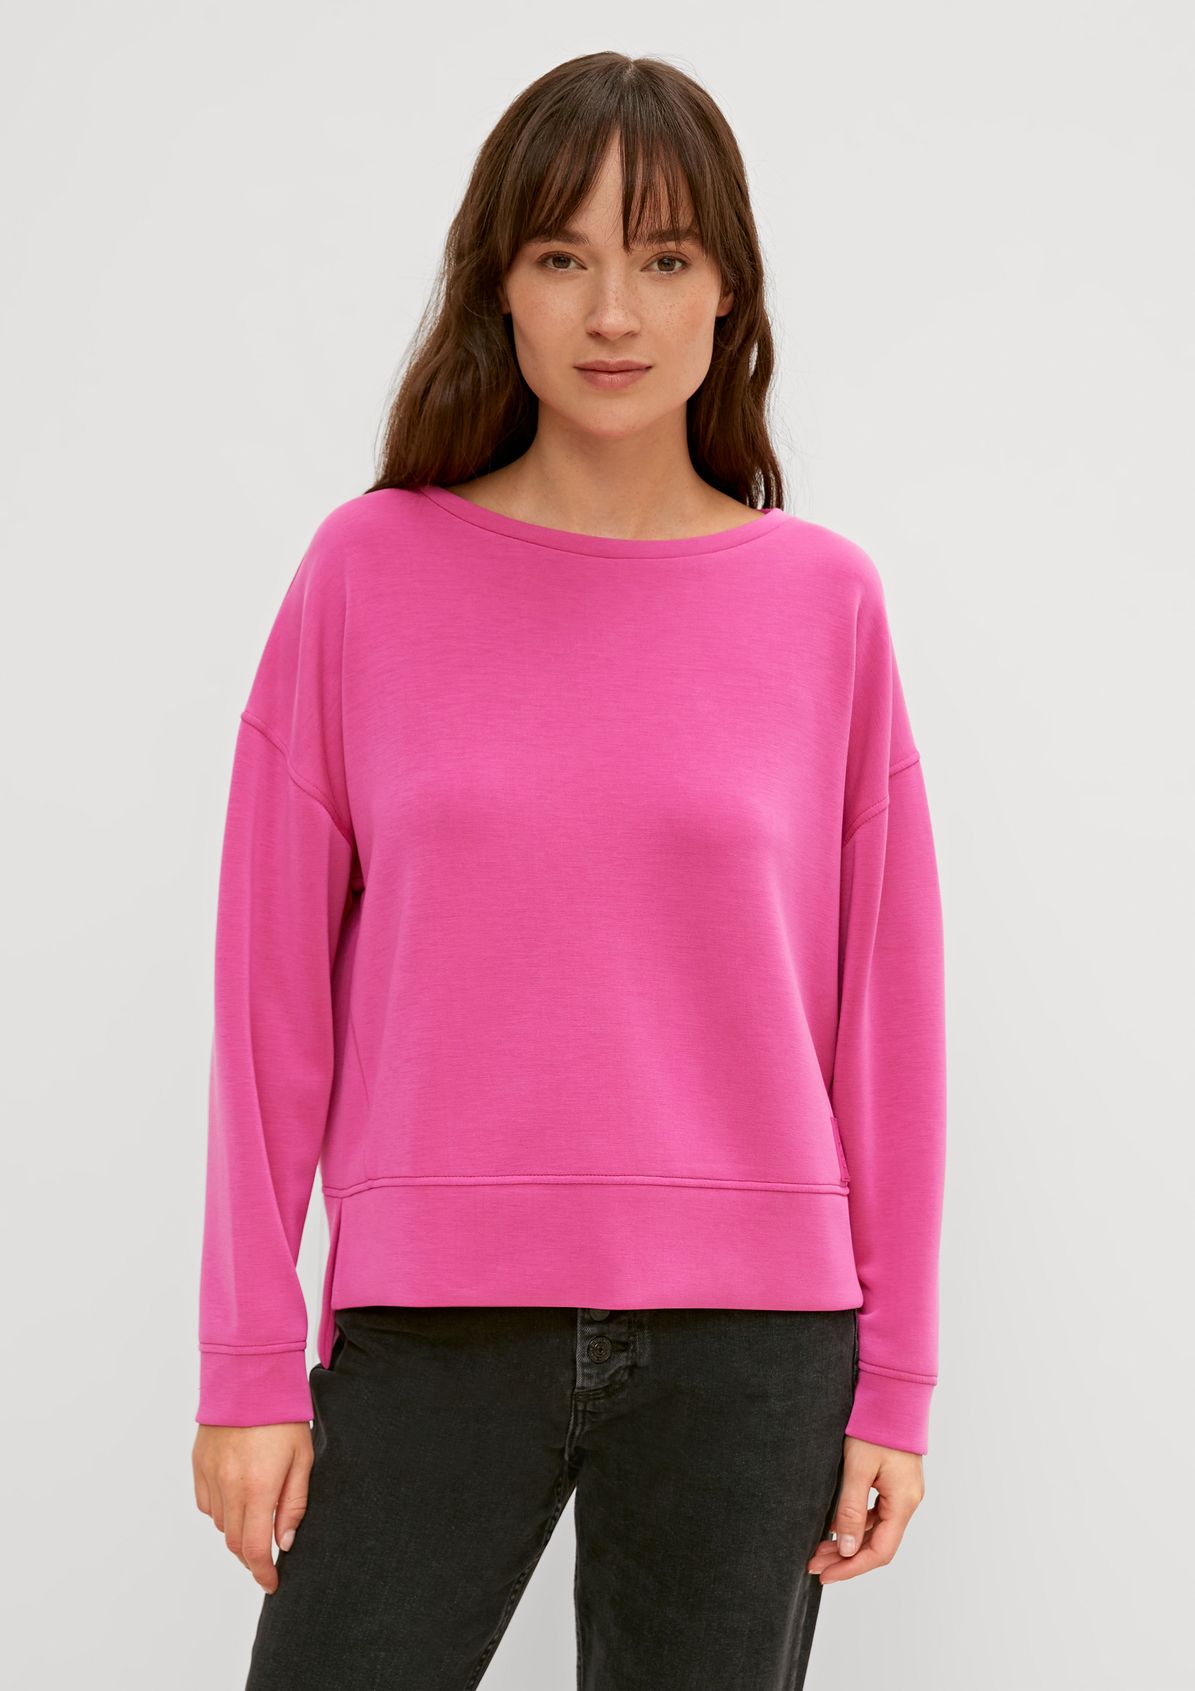 Sweatshirt in scuba fabric from comma